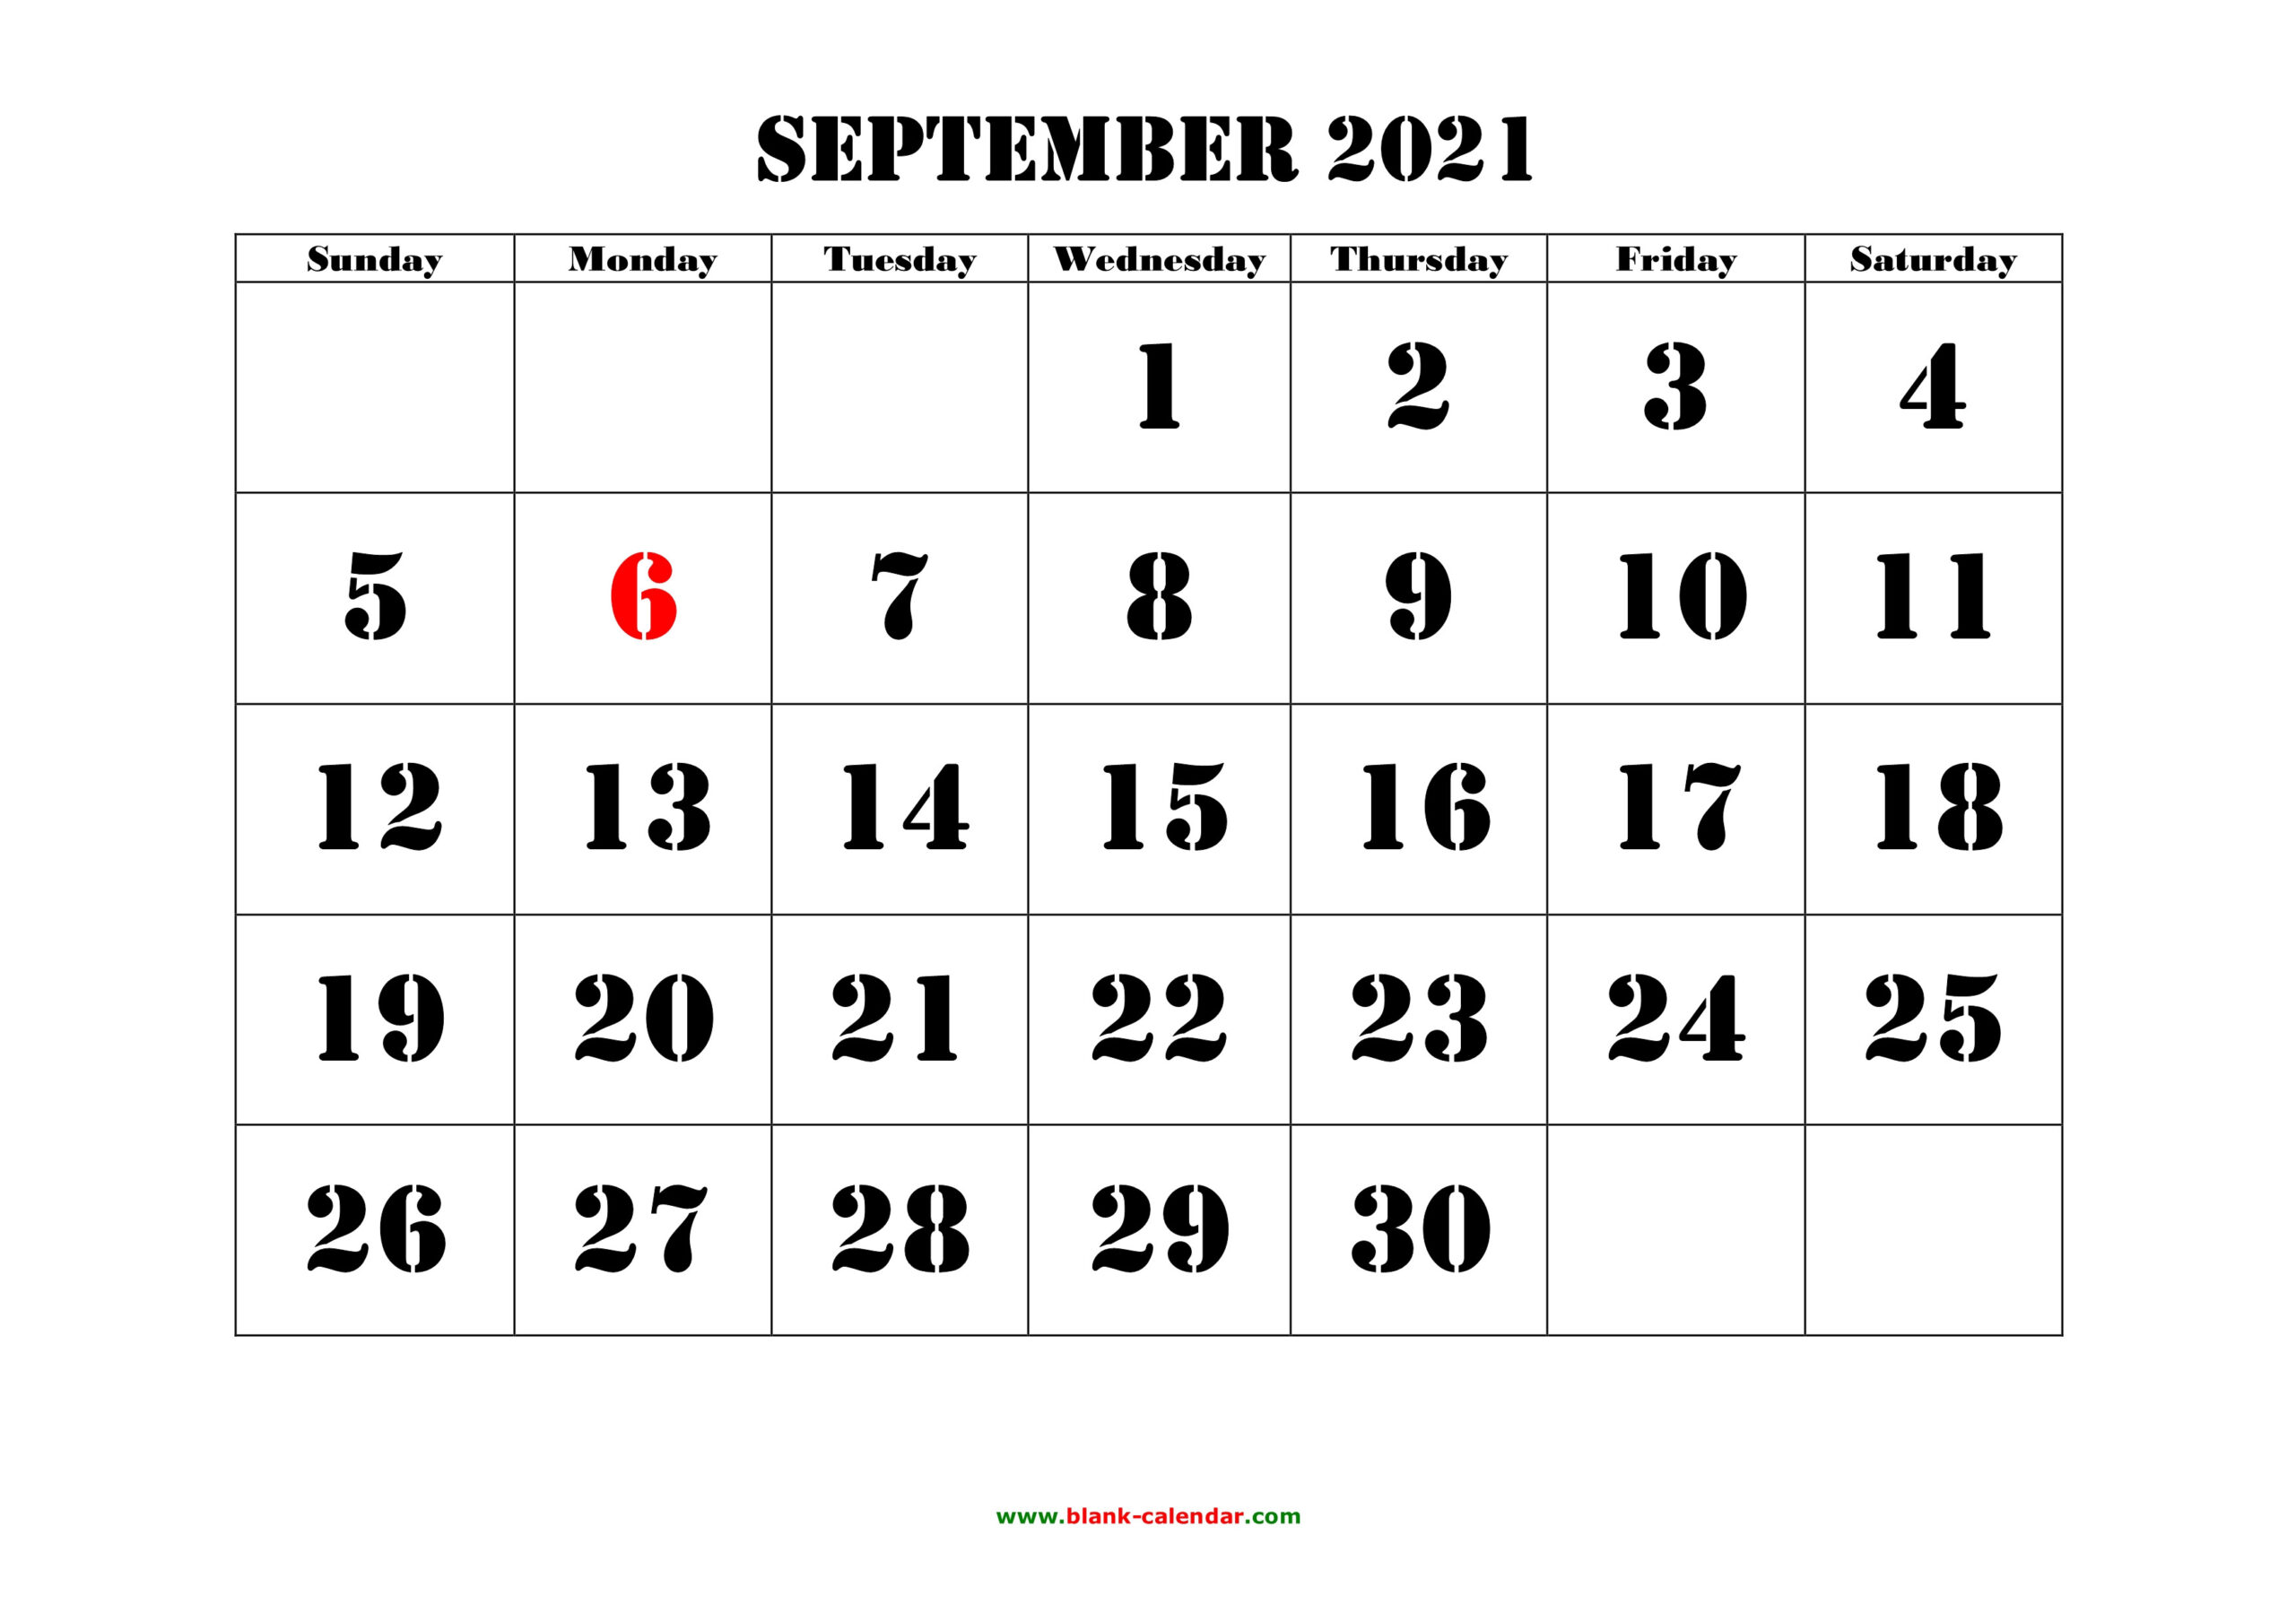 2021 Sepeltember Calendar | 2021 Calendar-September 2021 Calendar Printable Template